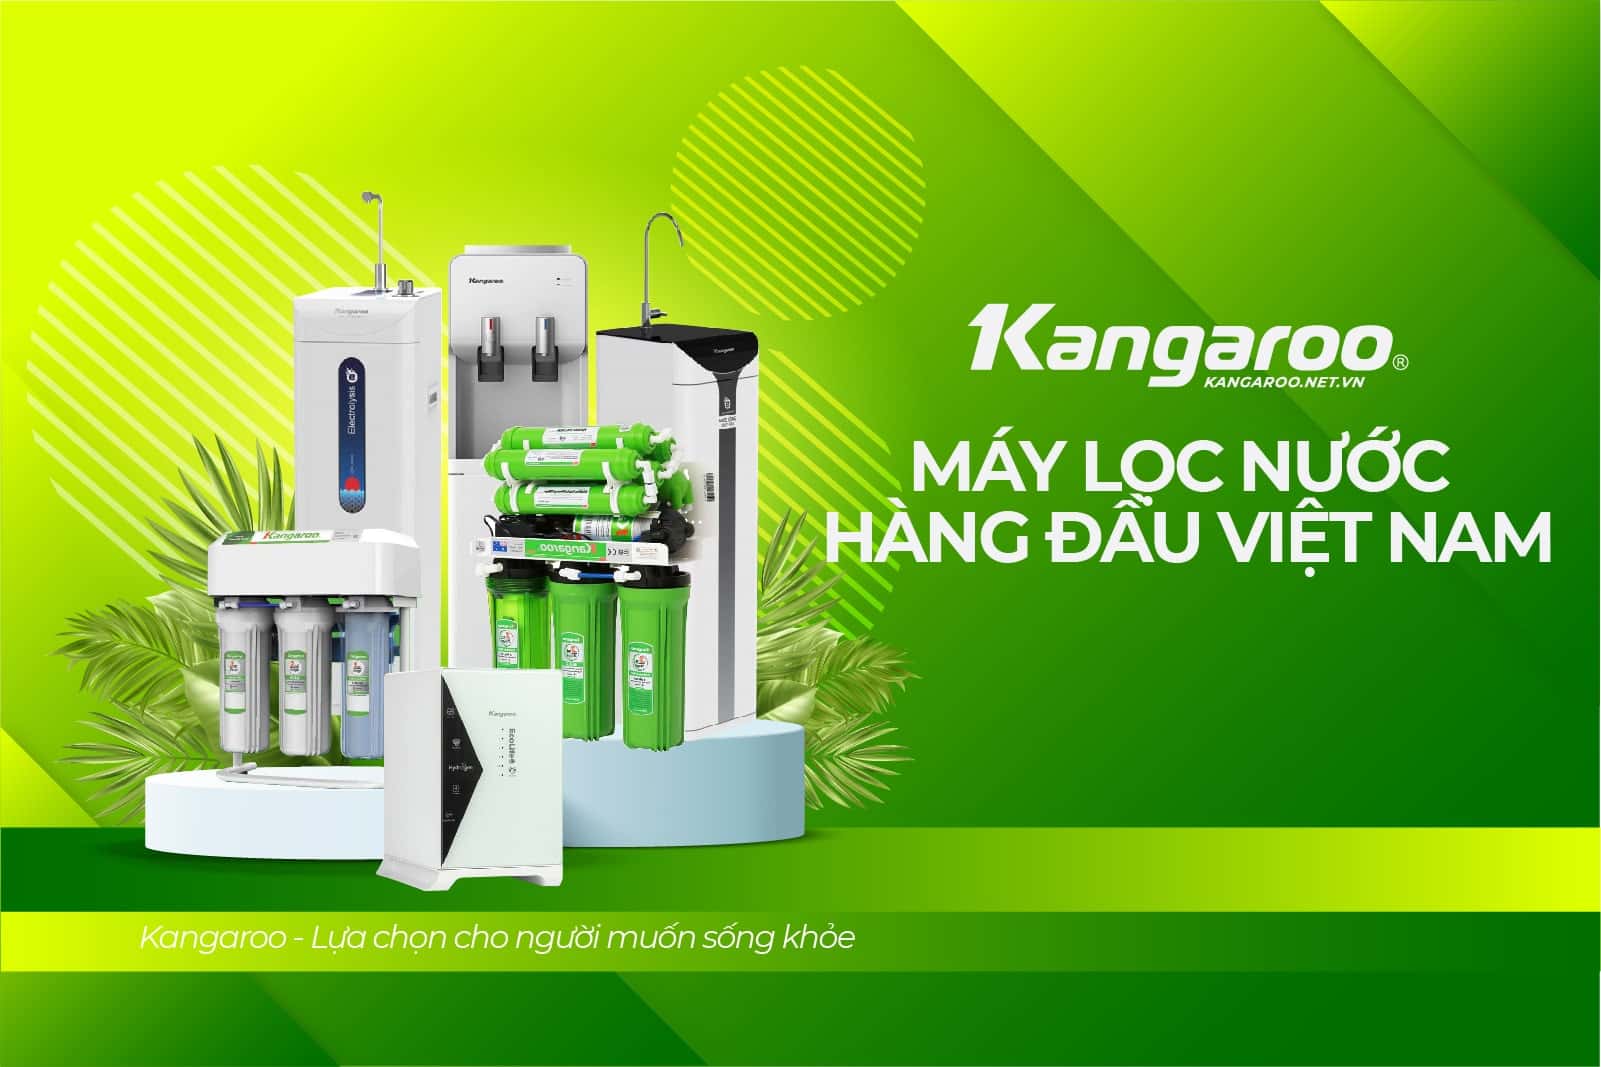 Thương hiệu máy lọc nước kangarro  Kangaroo máy lọc nước hàng đầu Việt Nam